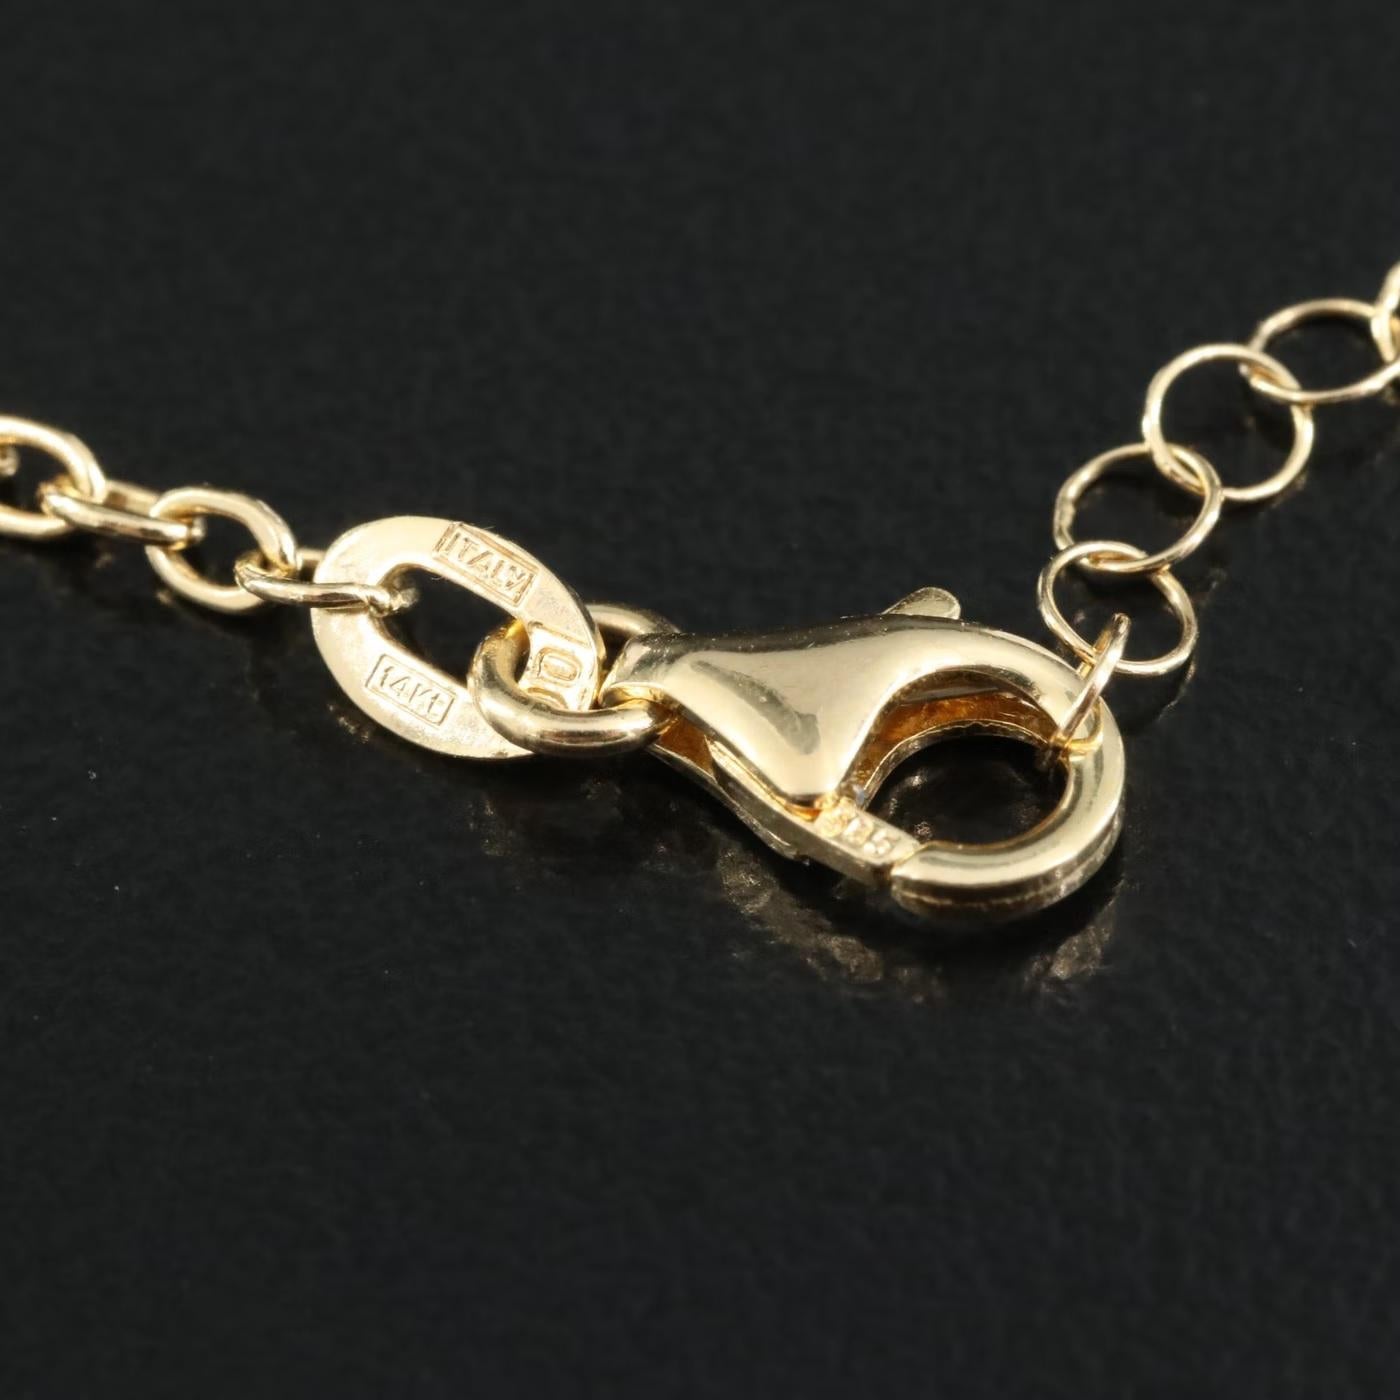 $2950 / Italy Designer Top Quality Fringe Necklace / Adjustable / 14K Gold 4